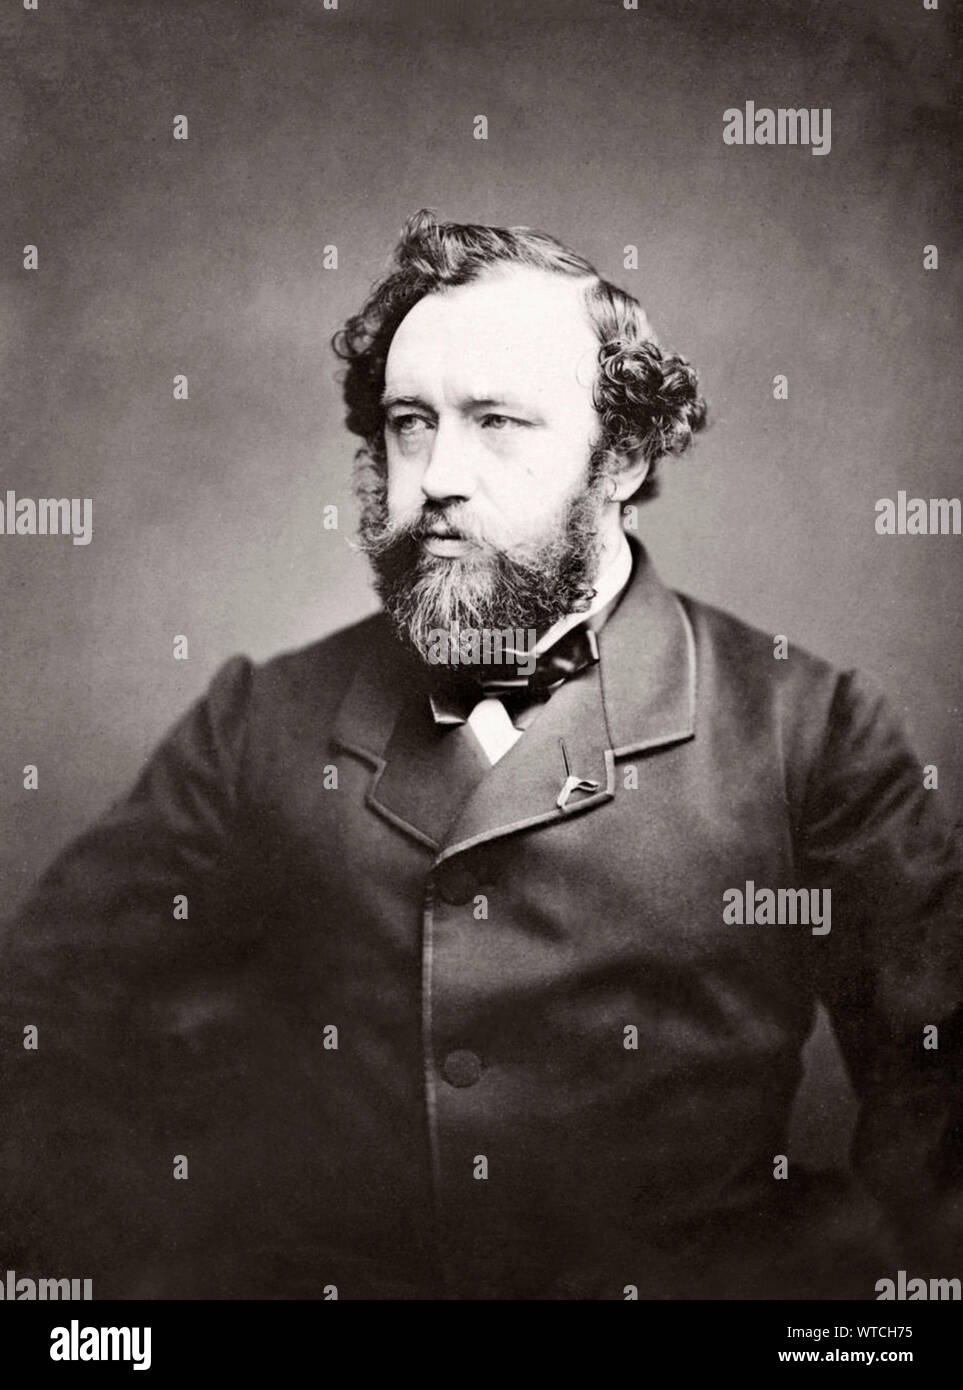 Antoine-Joseph 'Adolphe Sax" (1814 - 1894) era un inventore belga e musicista che ha creato il sassofono nei primi 1840s, i brevetti in 1846. Egli Foto Stock